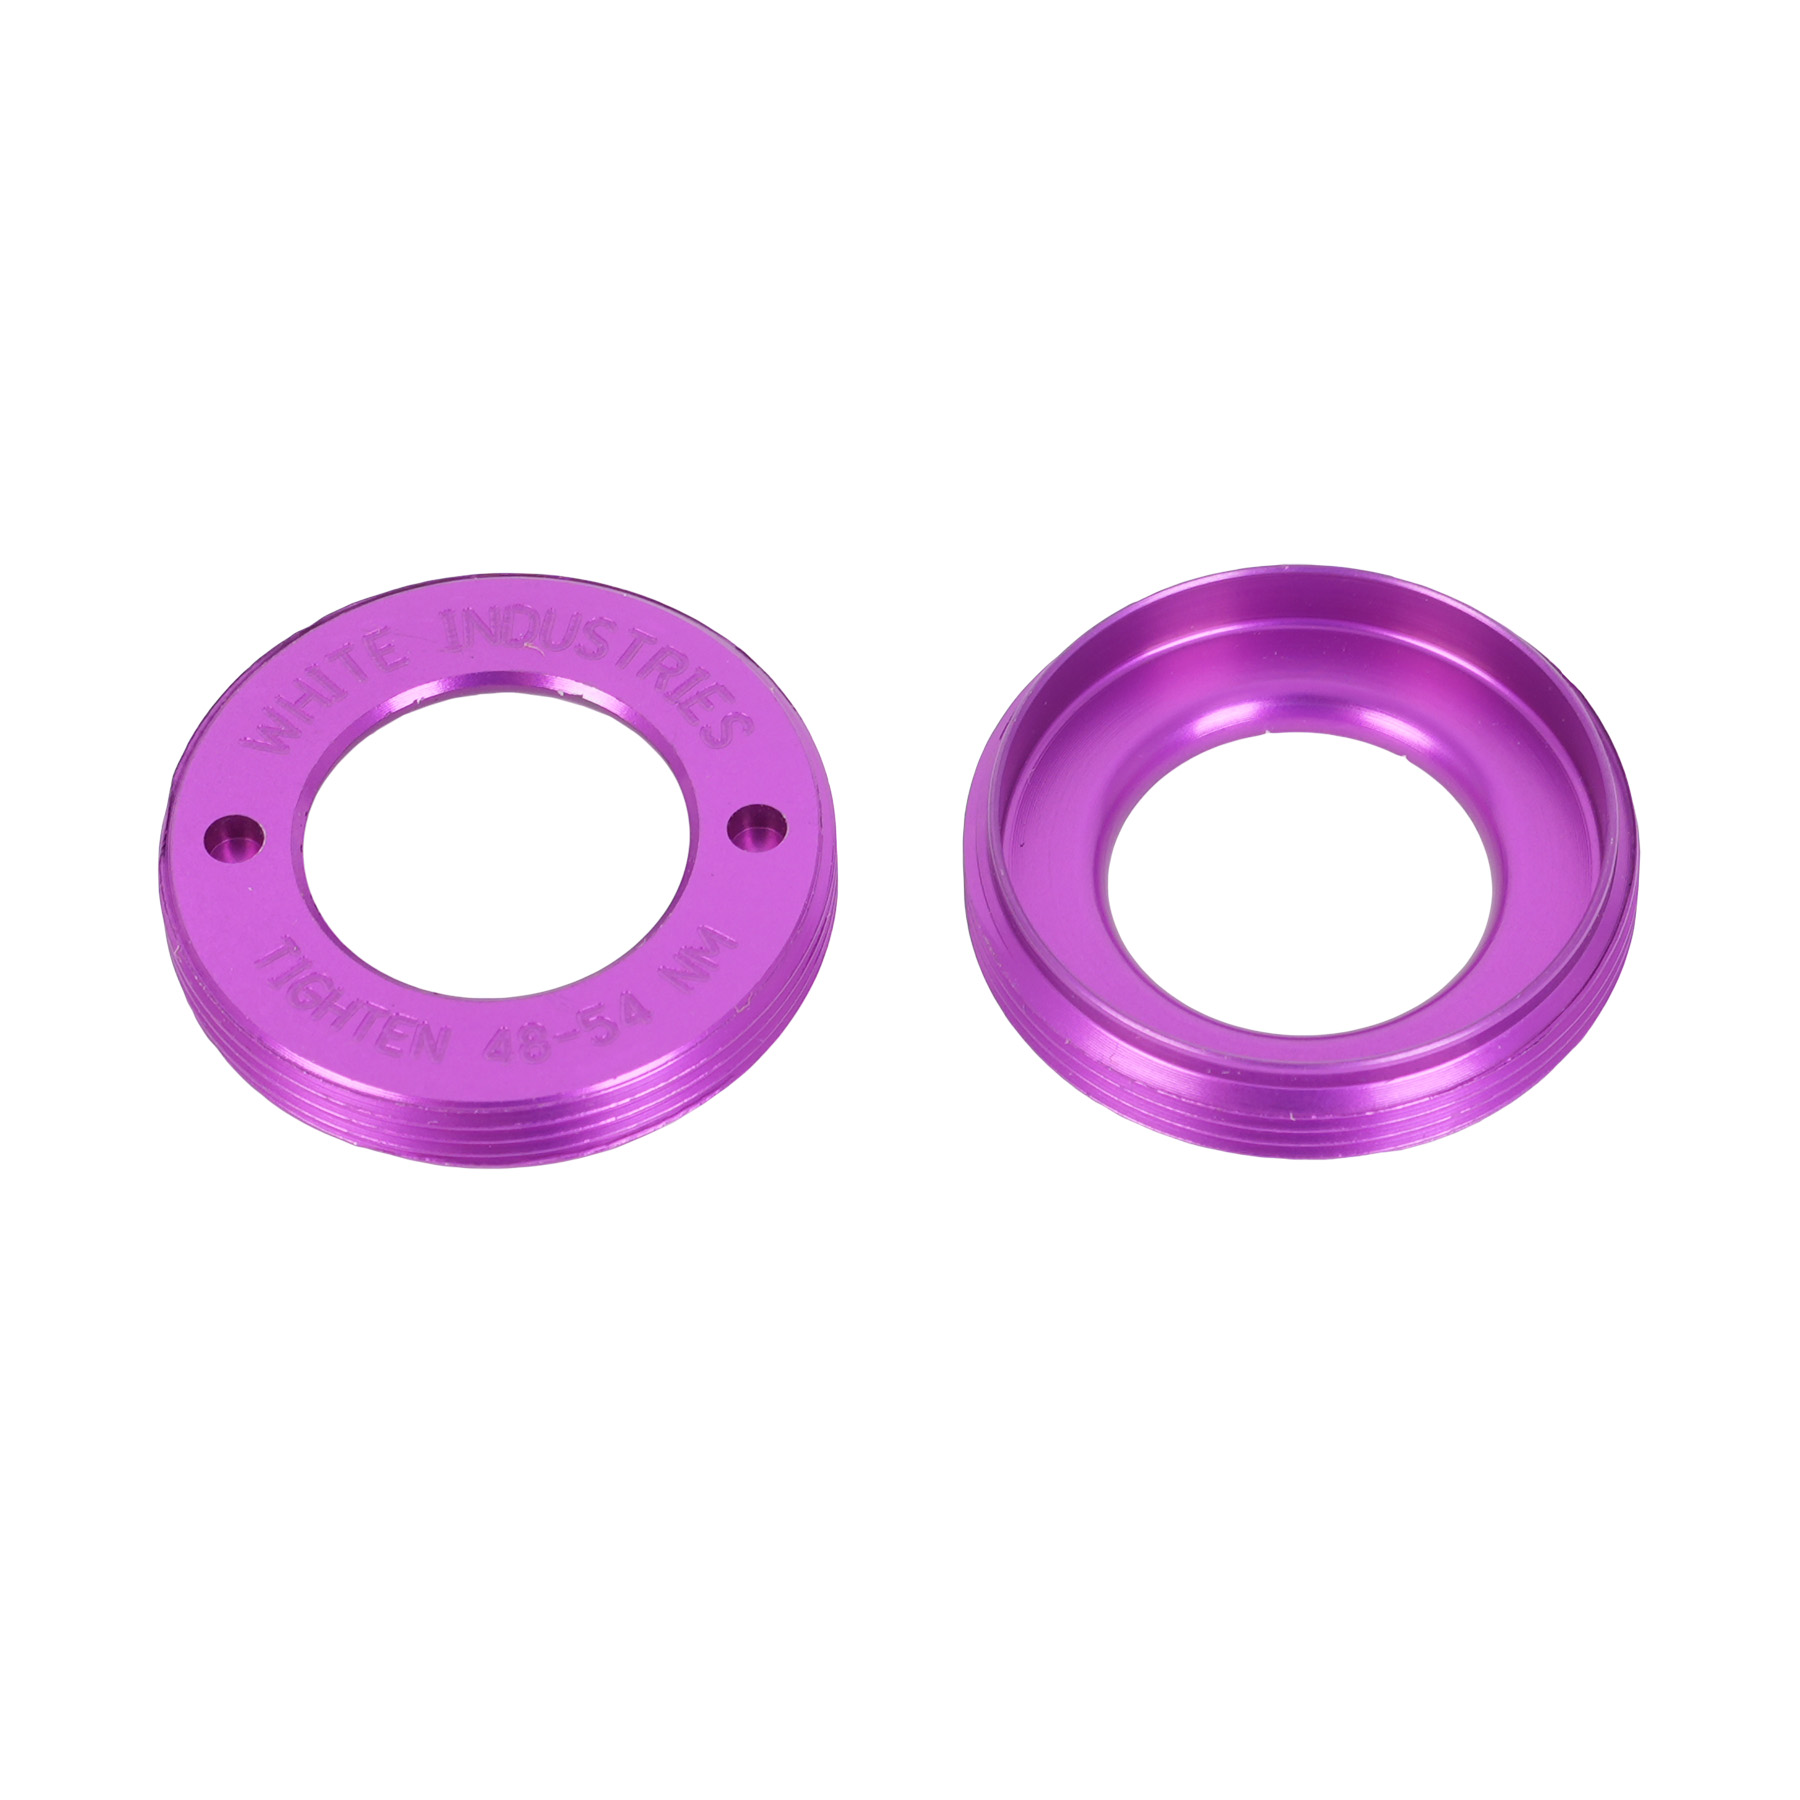 Produktbild von White Industries Abdeckkappe für M30, G30, R30 Kurbeln - violett